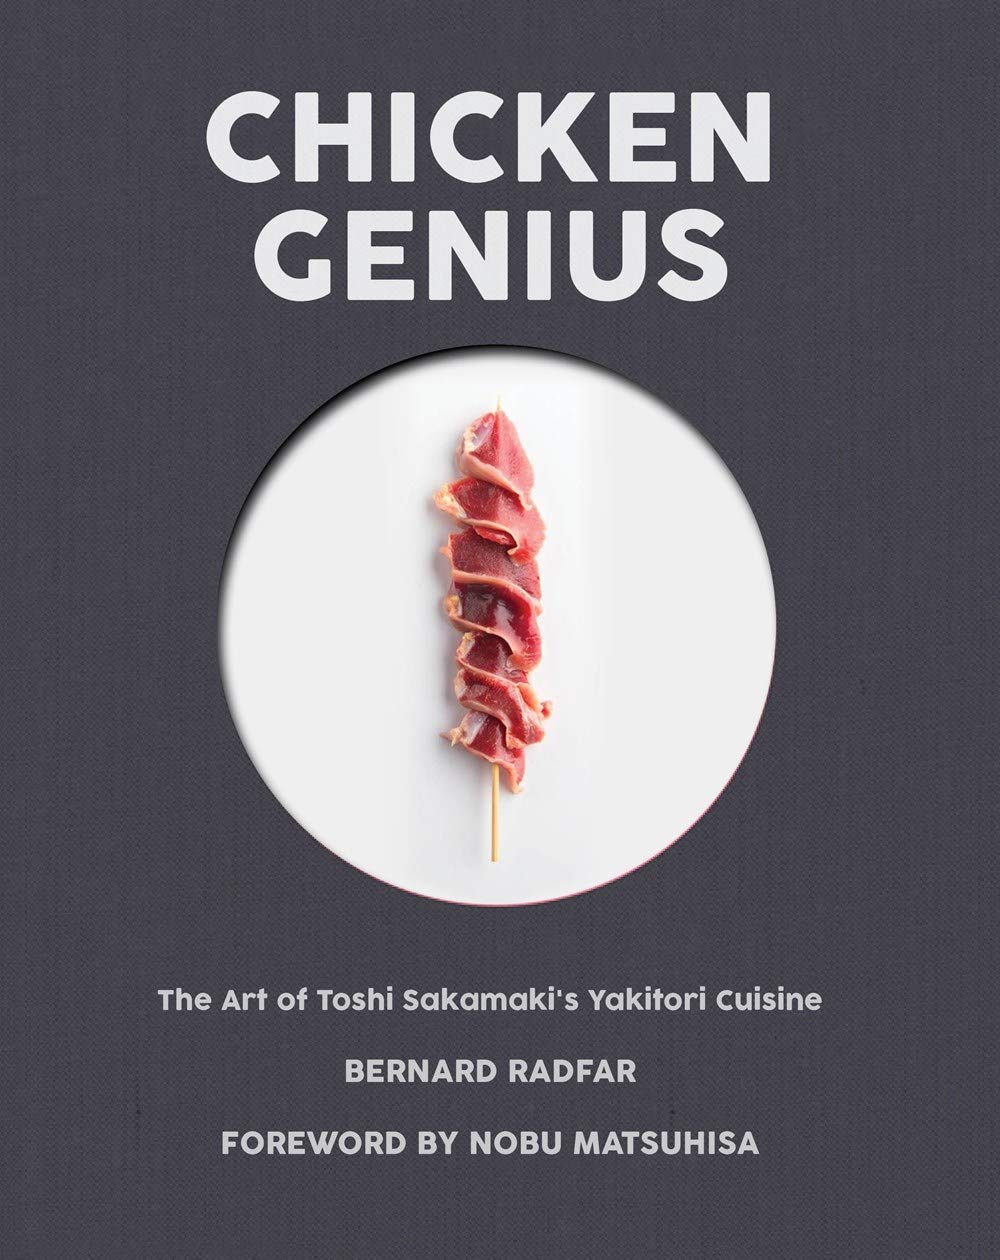 Chicken Genius: The Art of Toshi Sakamaki's Yakitori Cuisine (Bernard Radfar)